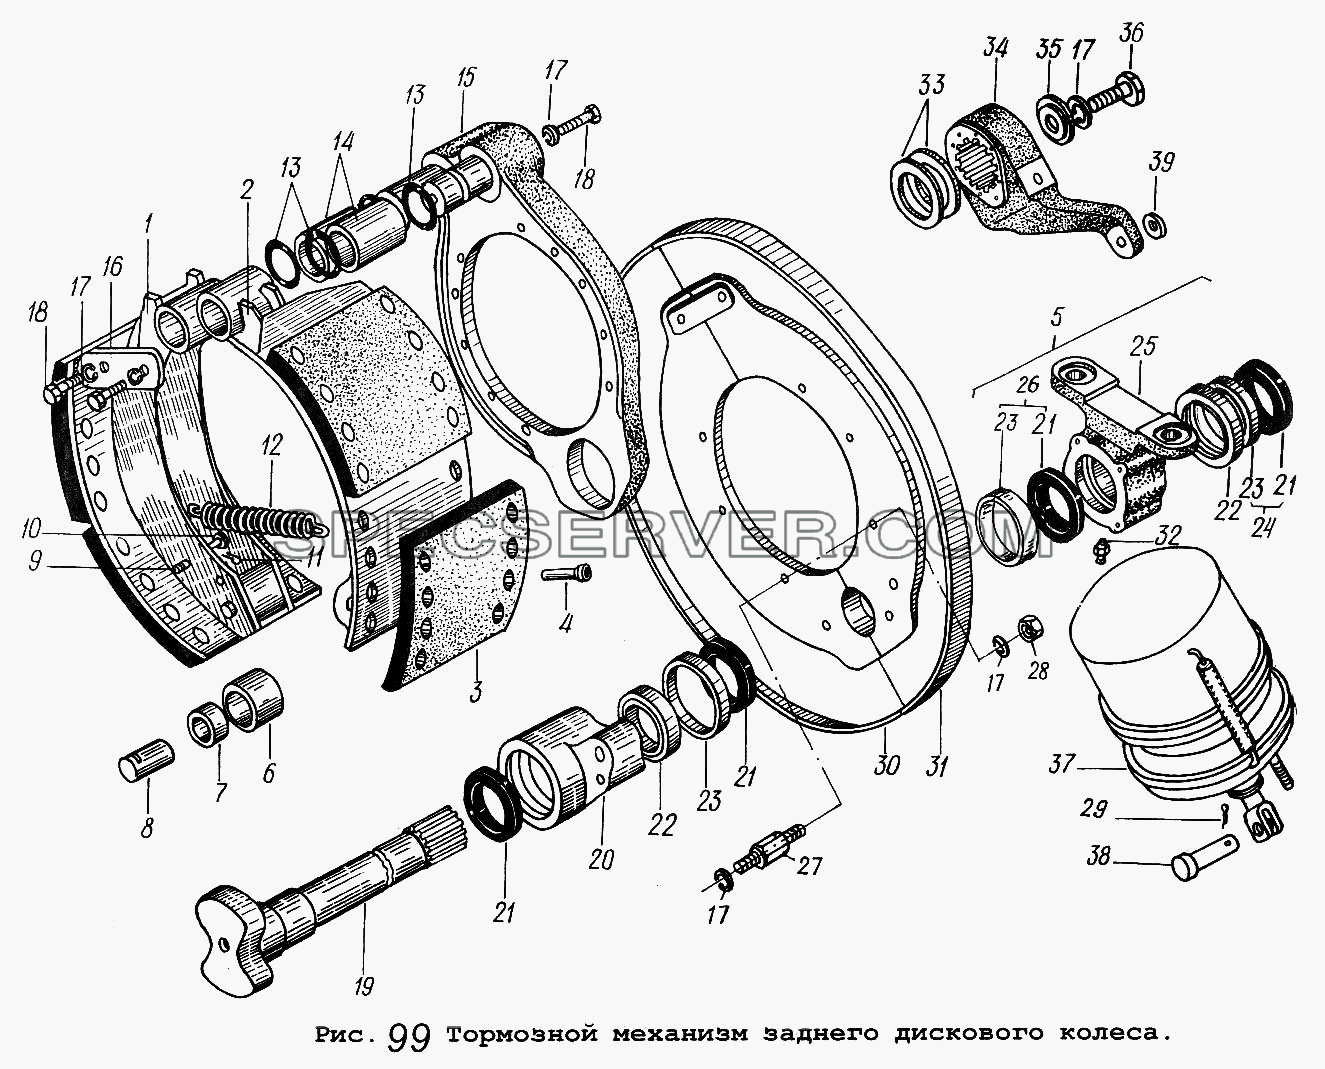 Тормозной механизм заднего дискового колеса для МАЗ-64229 (список запасных частей)